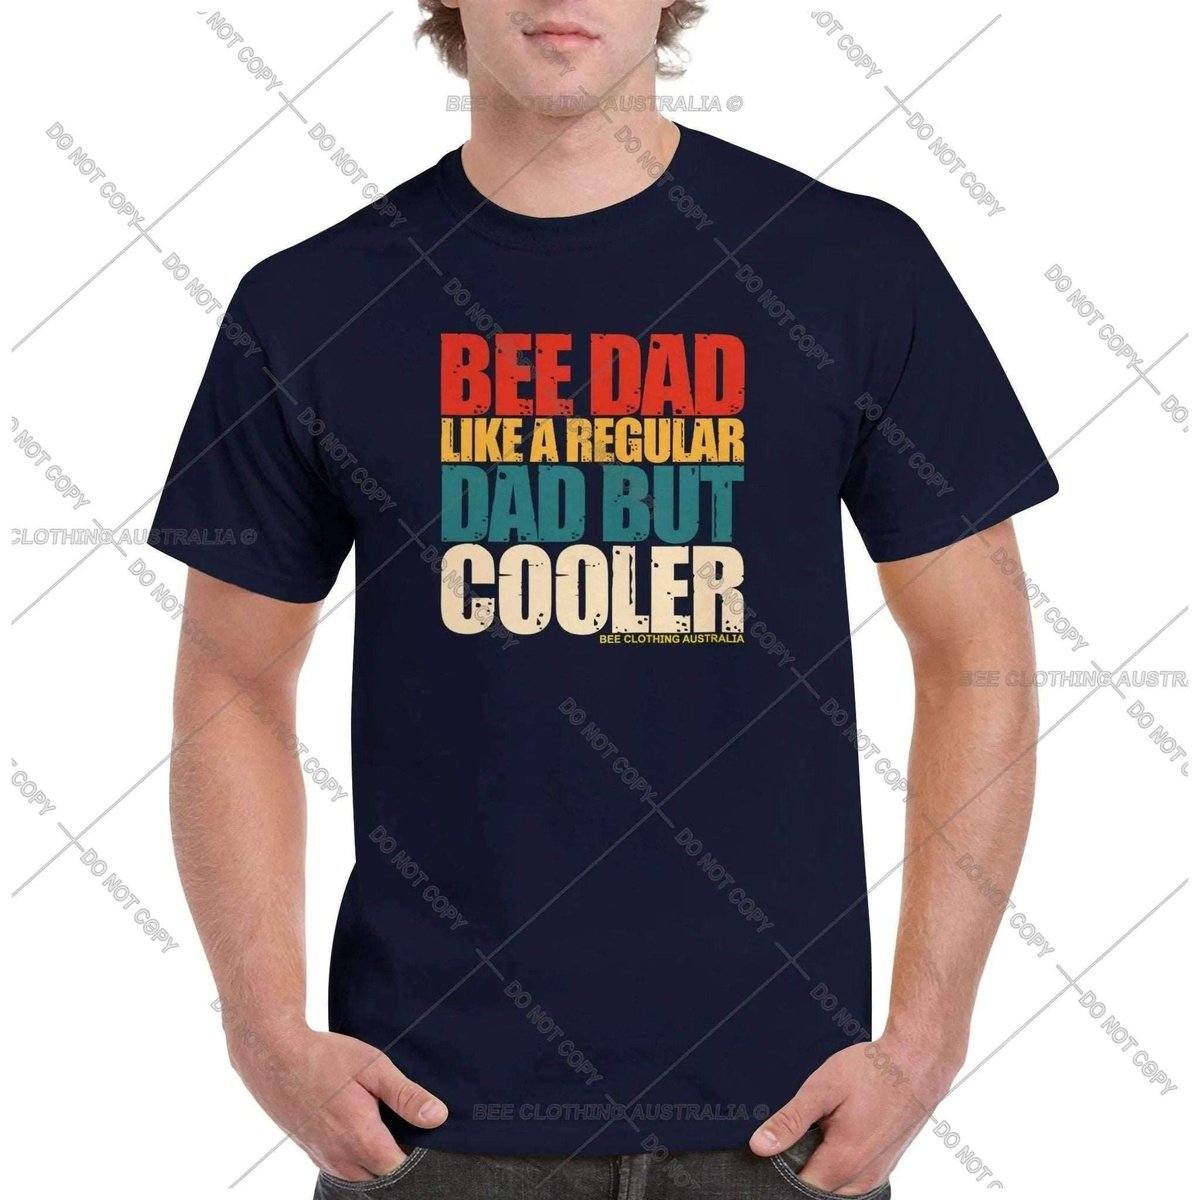 Bee Dad But Cooler VintageT-Shirt Australia Online Color Navy / S